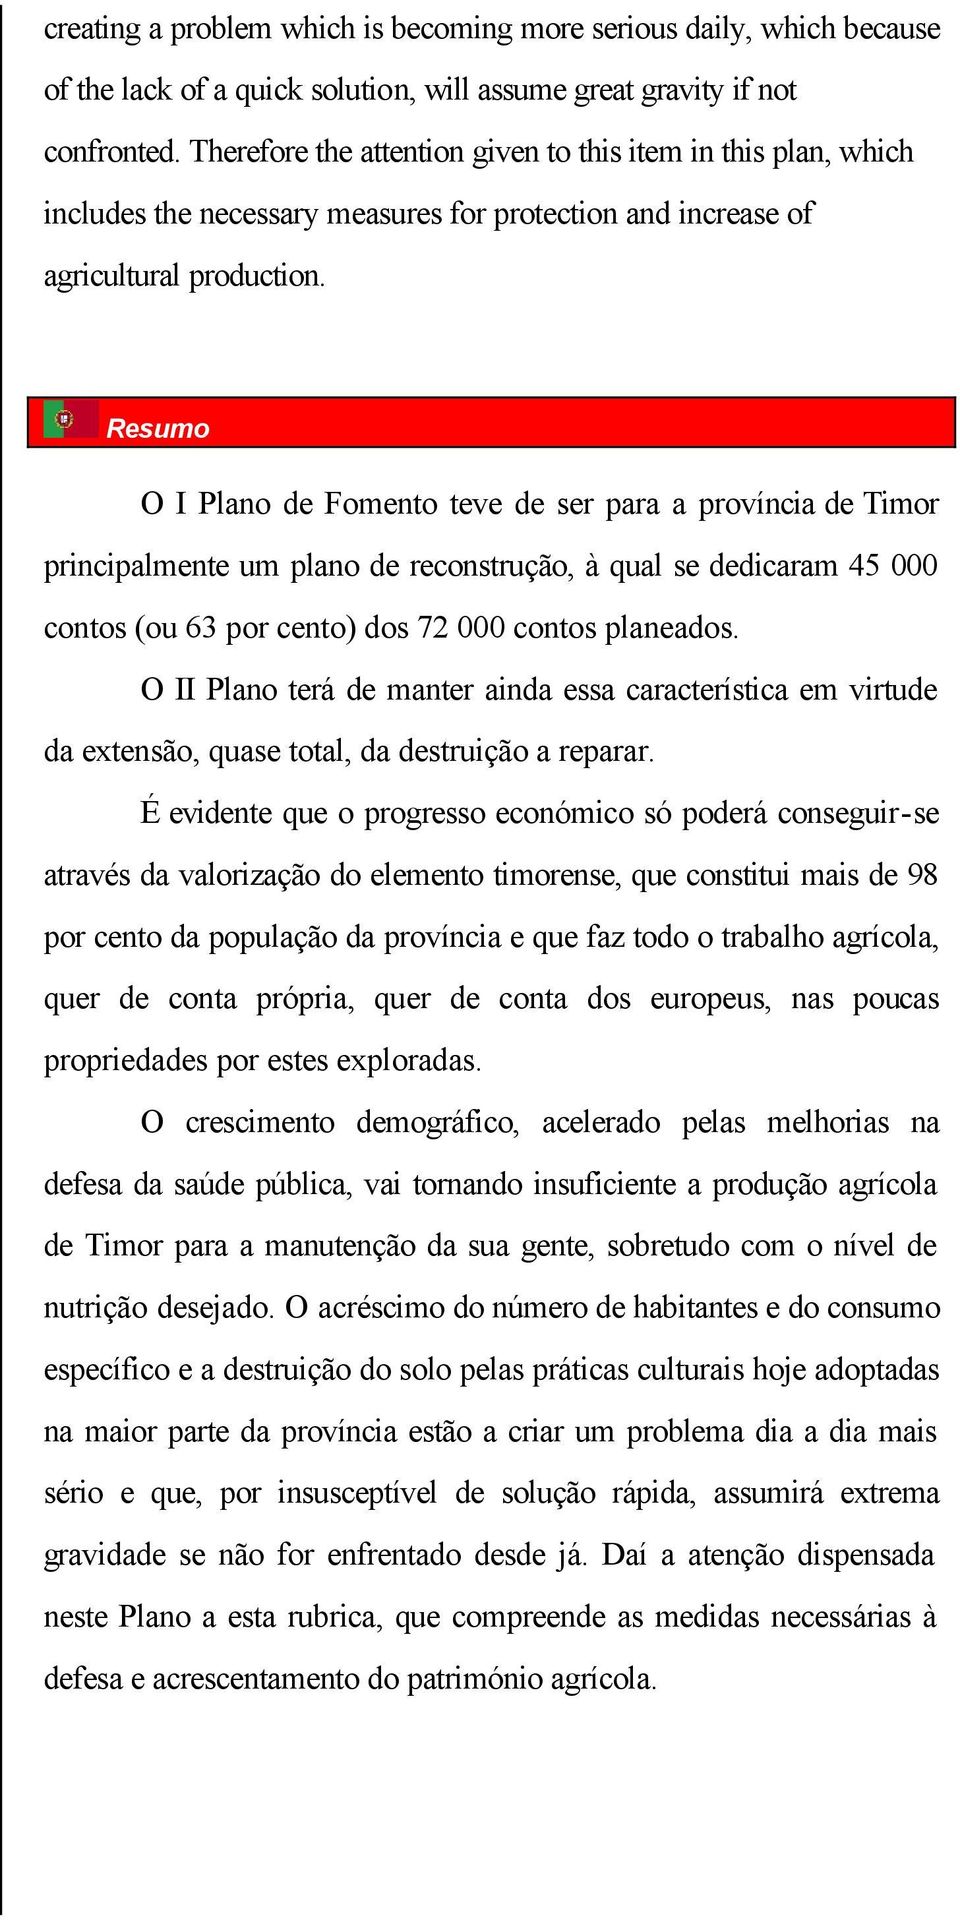 Resumo O I Plano de Fomento teve de ser para a província de Timor principalmente um plano de reconstrução, à qual se dedicaram 45 000 contos (ou 63 por cento) dos 72 000 contos planeados.